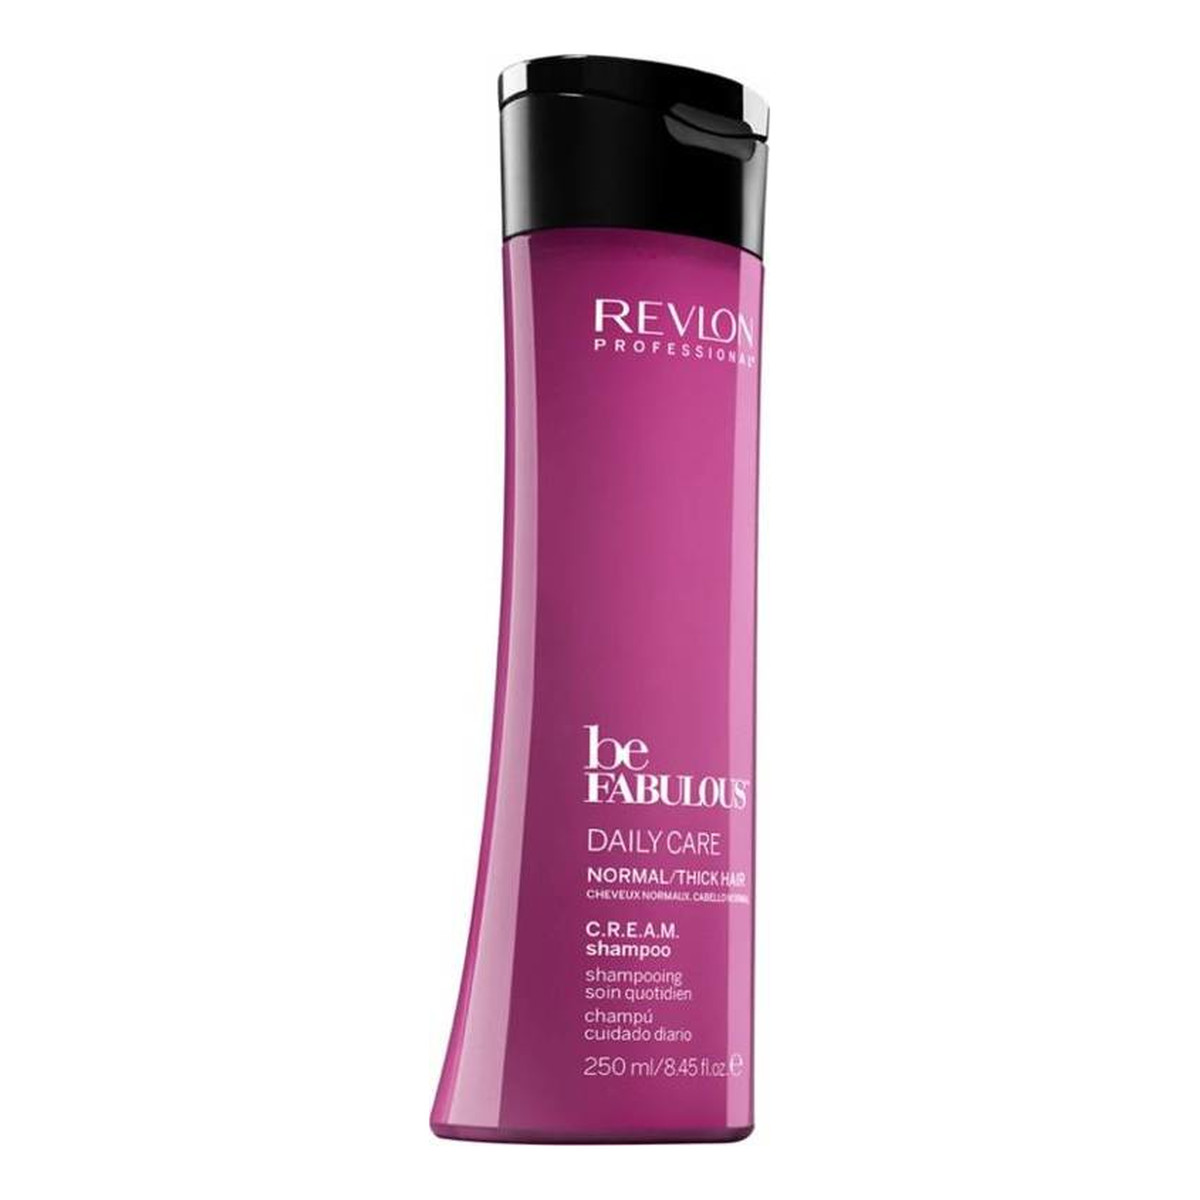 Revlon Be Fabulous Dail Care szampon do włosów normalych i grubych 250ml